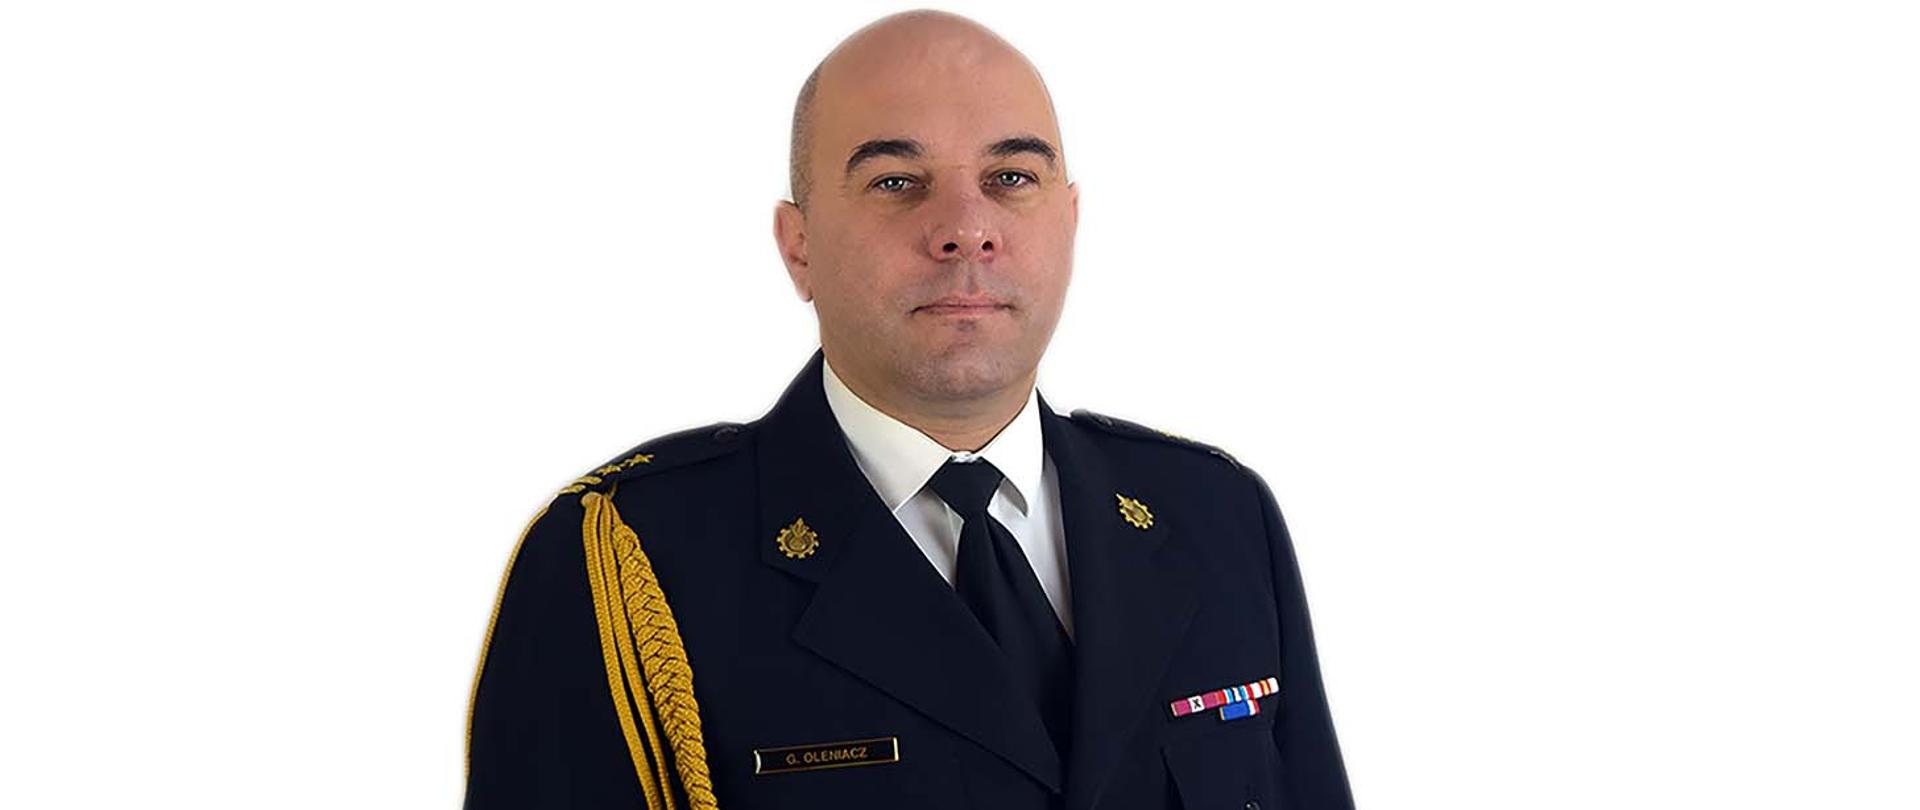 Zdjęcie wykonane na białym tle przedstawia profil komendanta powiatowego PSP w Sanoku bryg. Grzegorza Oleniacza. Komendant ubrany jest w granatowy mundur wyjściowy PSP ze złotym sznurem.